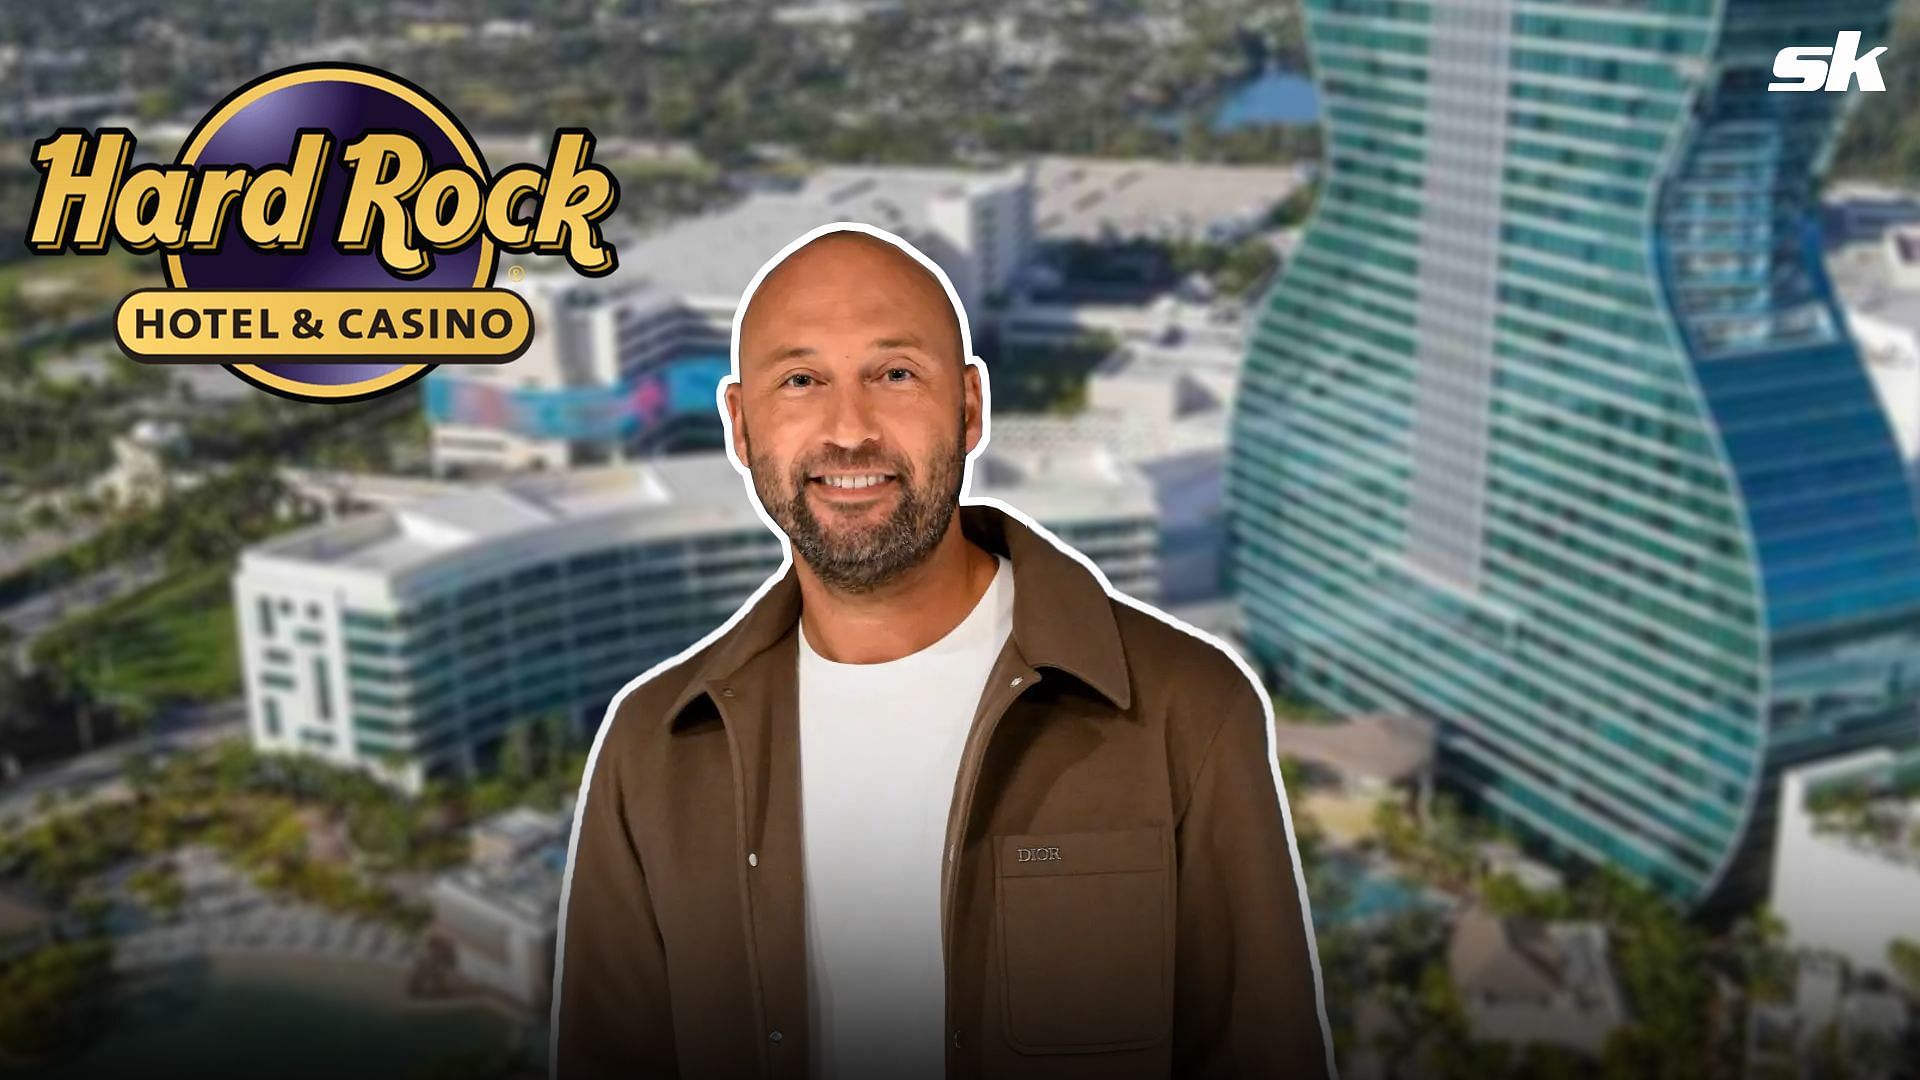 Derek Jeter to host star-studded Blackjack Tournament Weekend at Hard Rock Hollywood